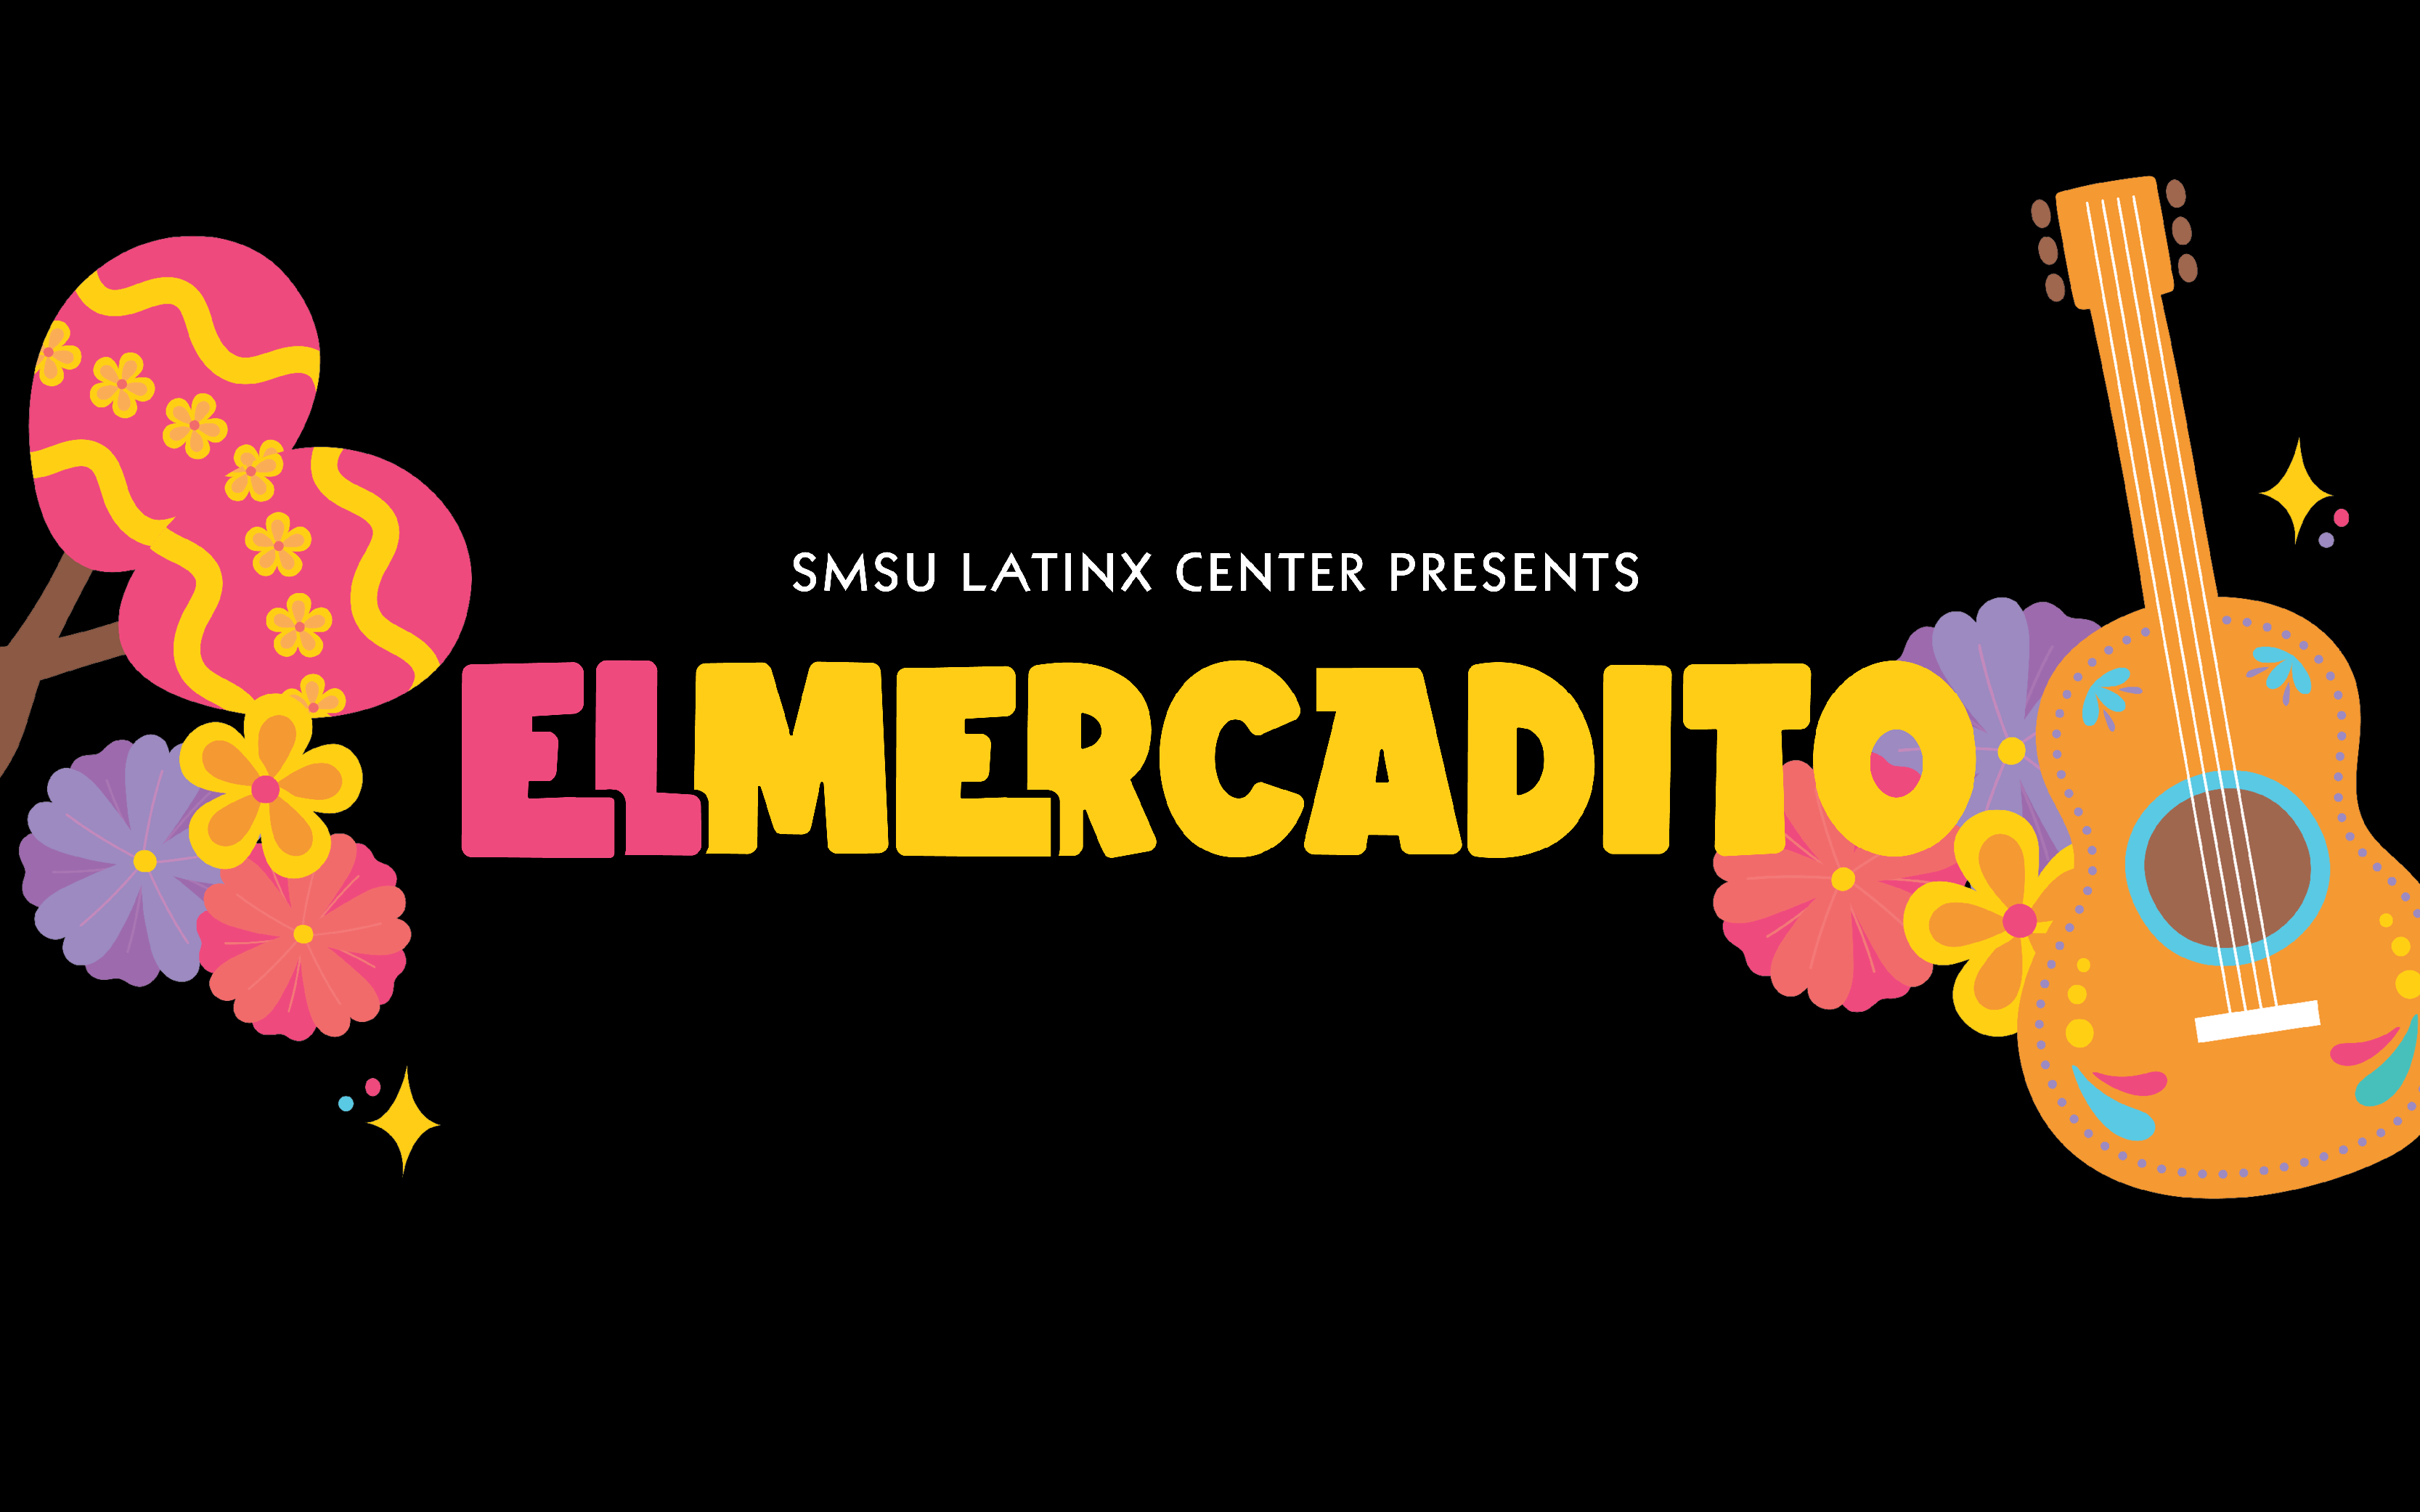 SMSU Latinx Center presents El Mercadito